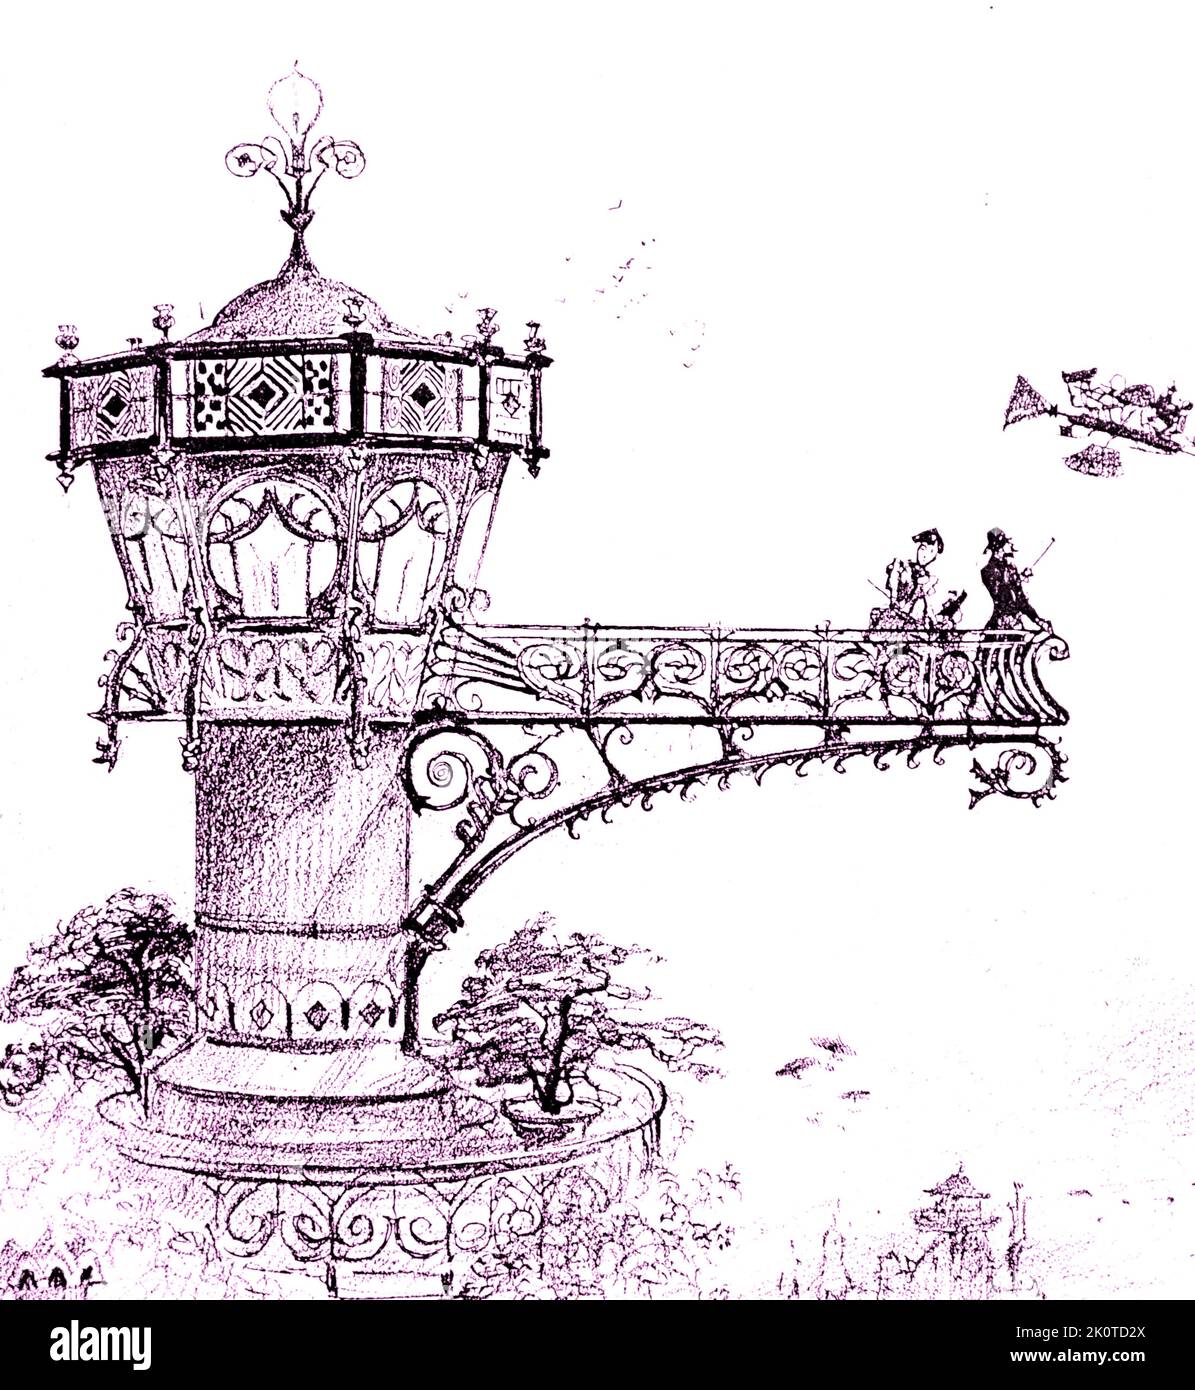 Futuristische Zeichnung, die eine Landeplattform des Hotels zeigt, auf der man an Bord eines Lufttaxis gehen kann. Von Robida, Le Vingtieme Siecle, Paris 1883; Stockfoto